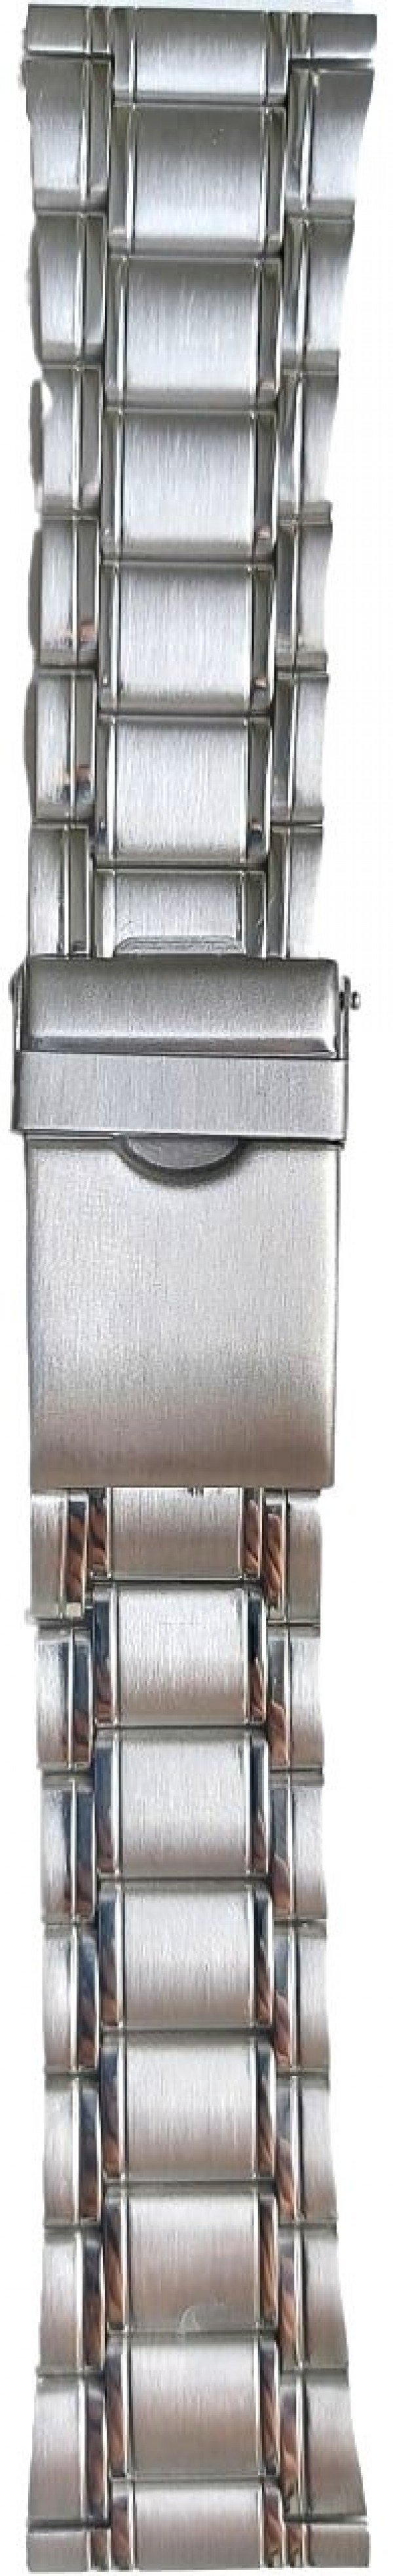 Metalni kaiš - MK26.02 Srebrni 26mm